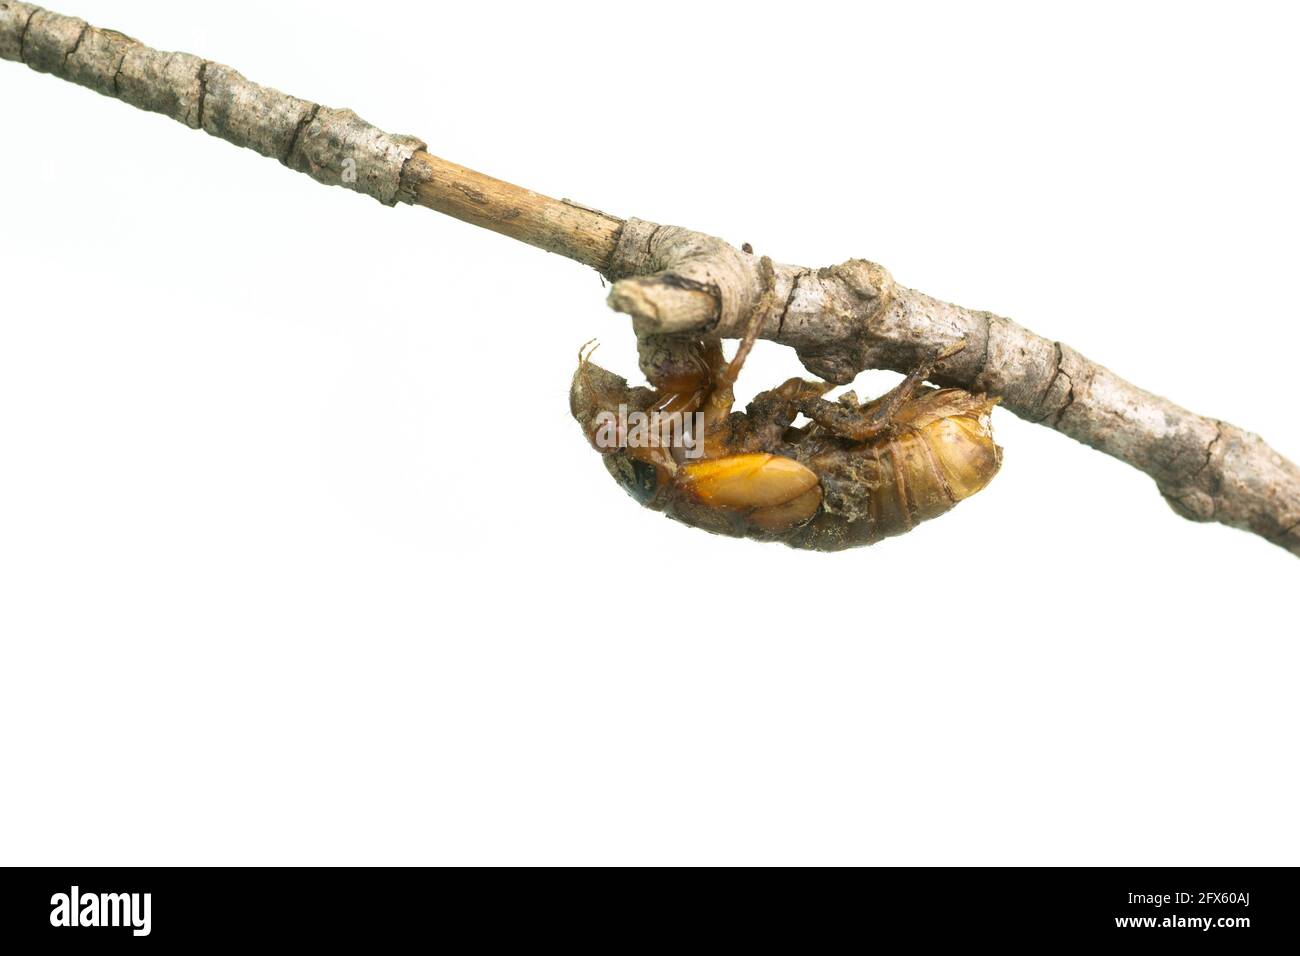 Brood X nymphe périodique de 17 ans cicada sur une branche isolée sur fond blanc Banque D'Images